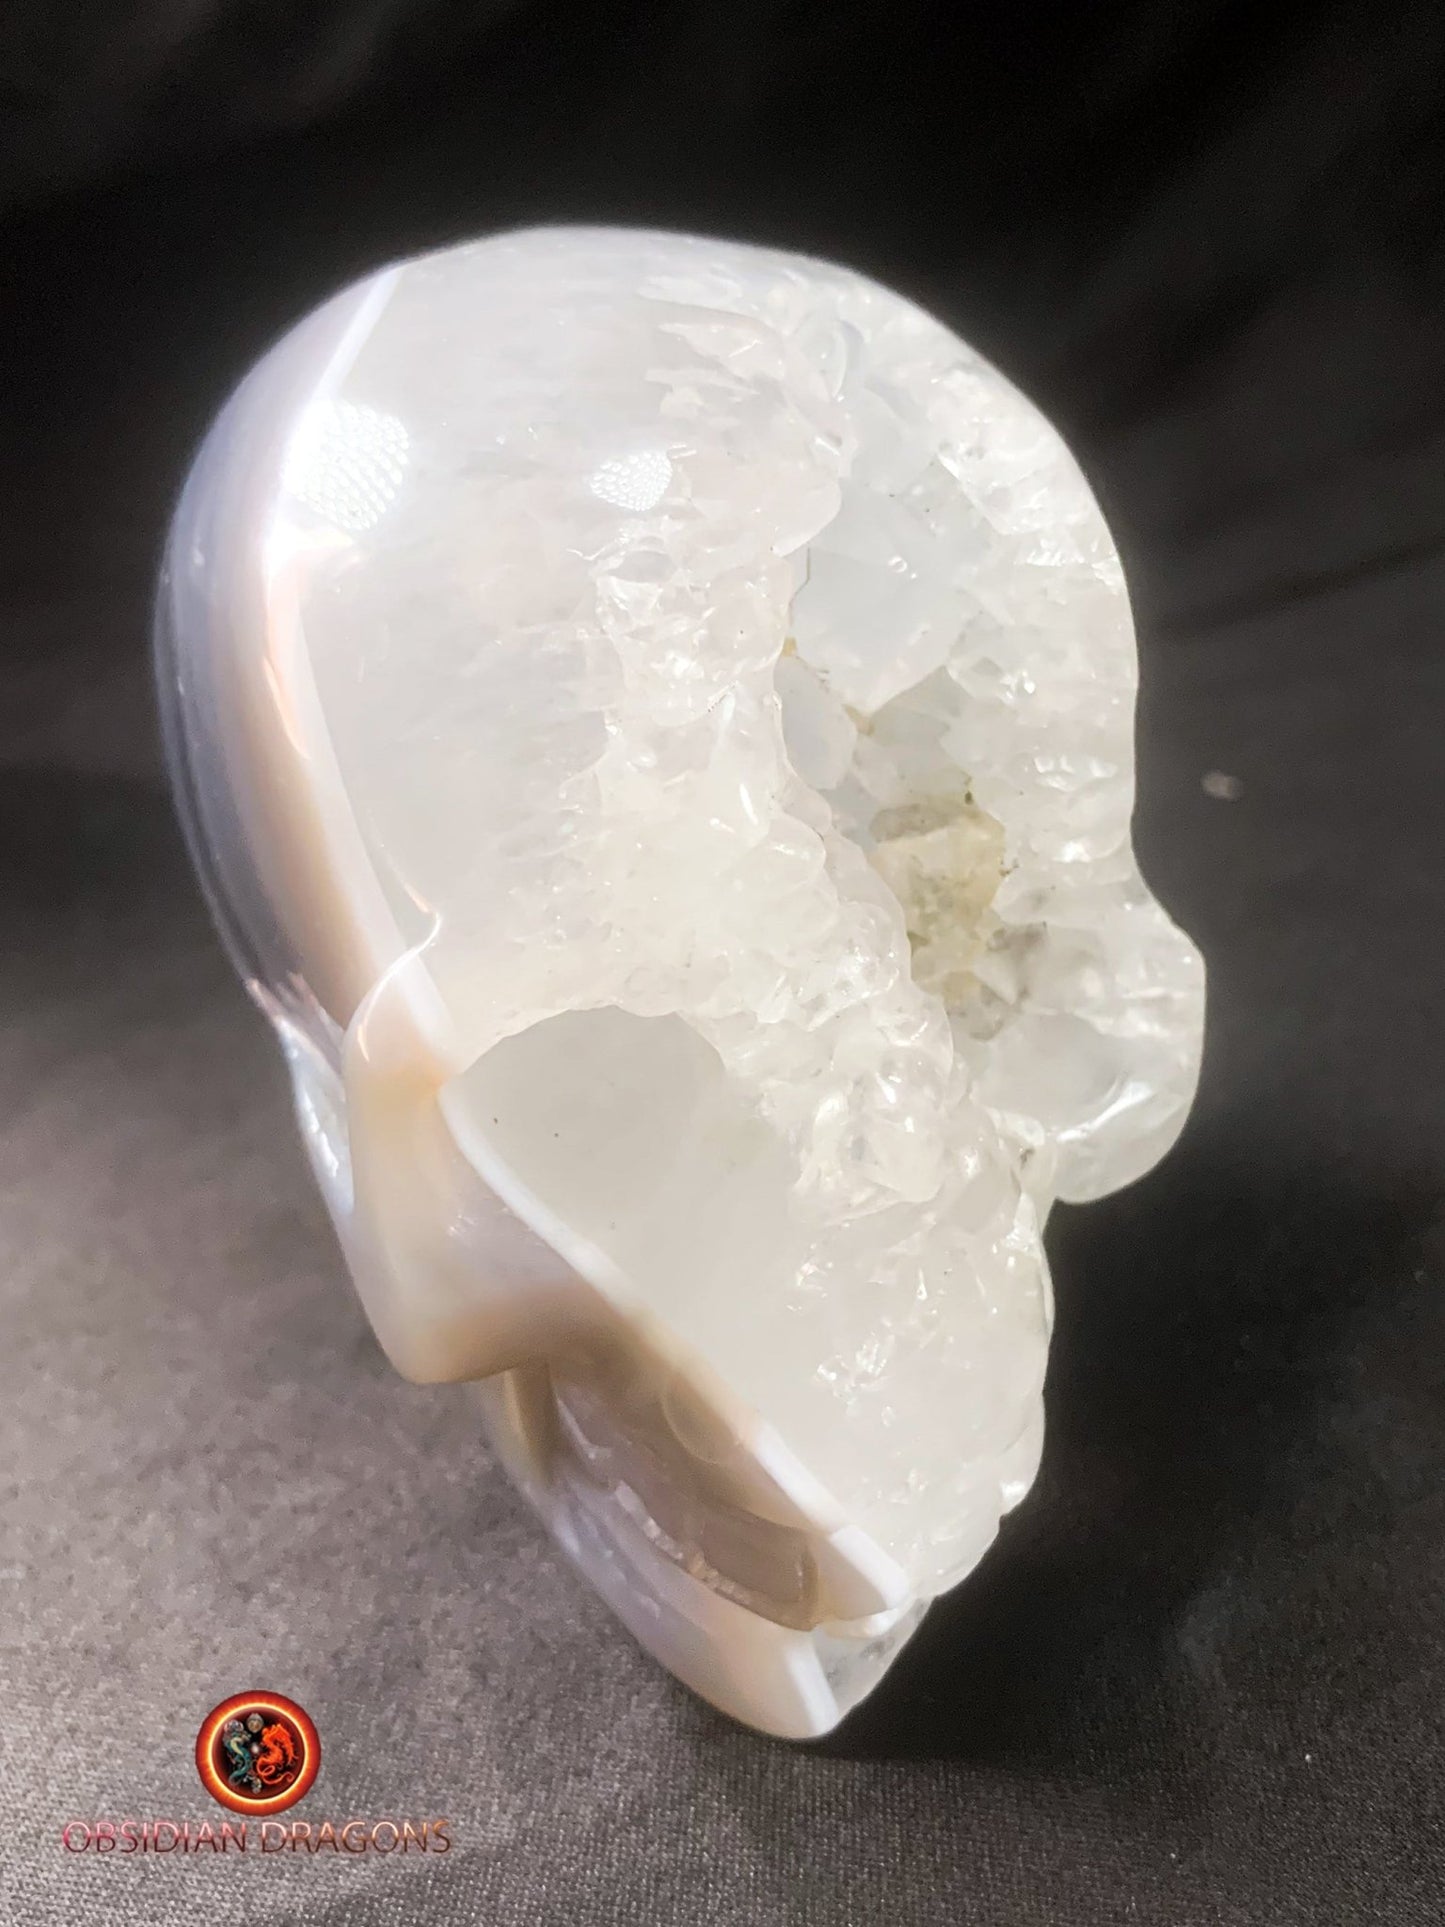 Crâne de cristal dans une géode de quartz- Rare | obsidian dragons